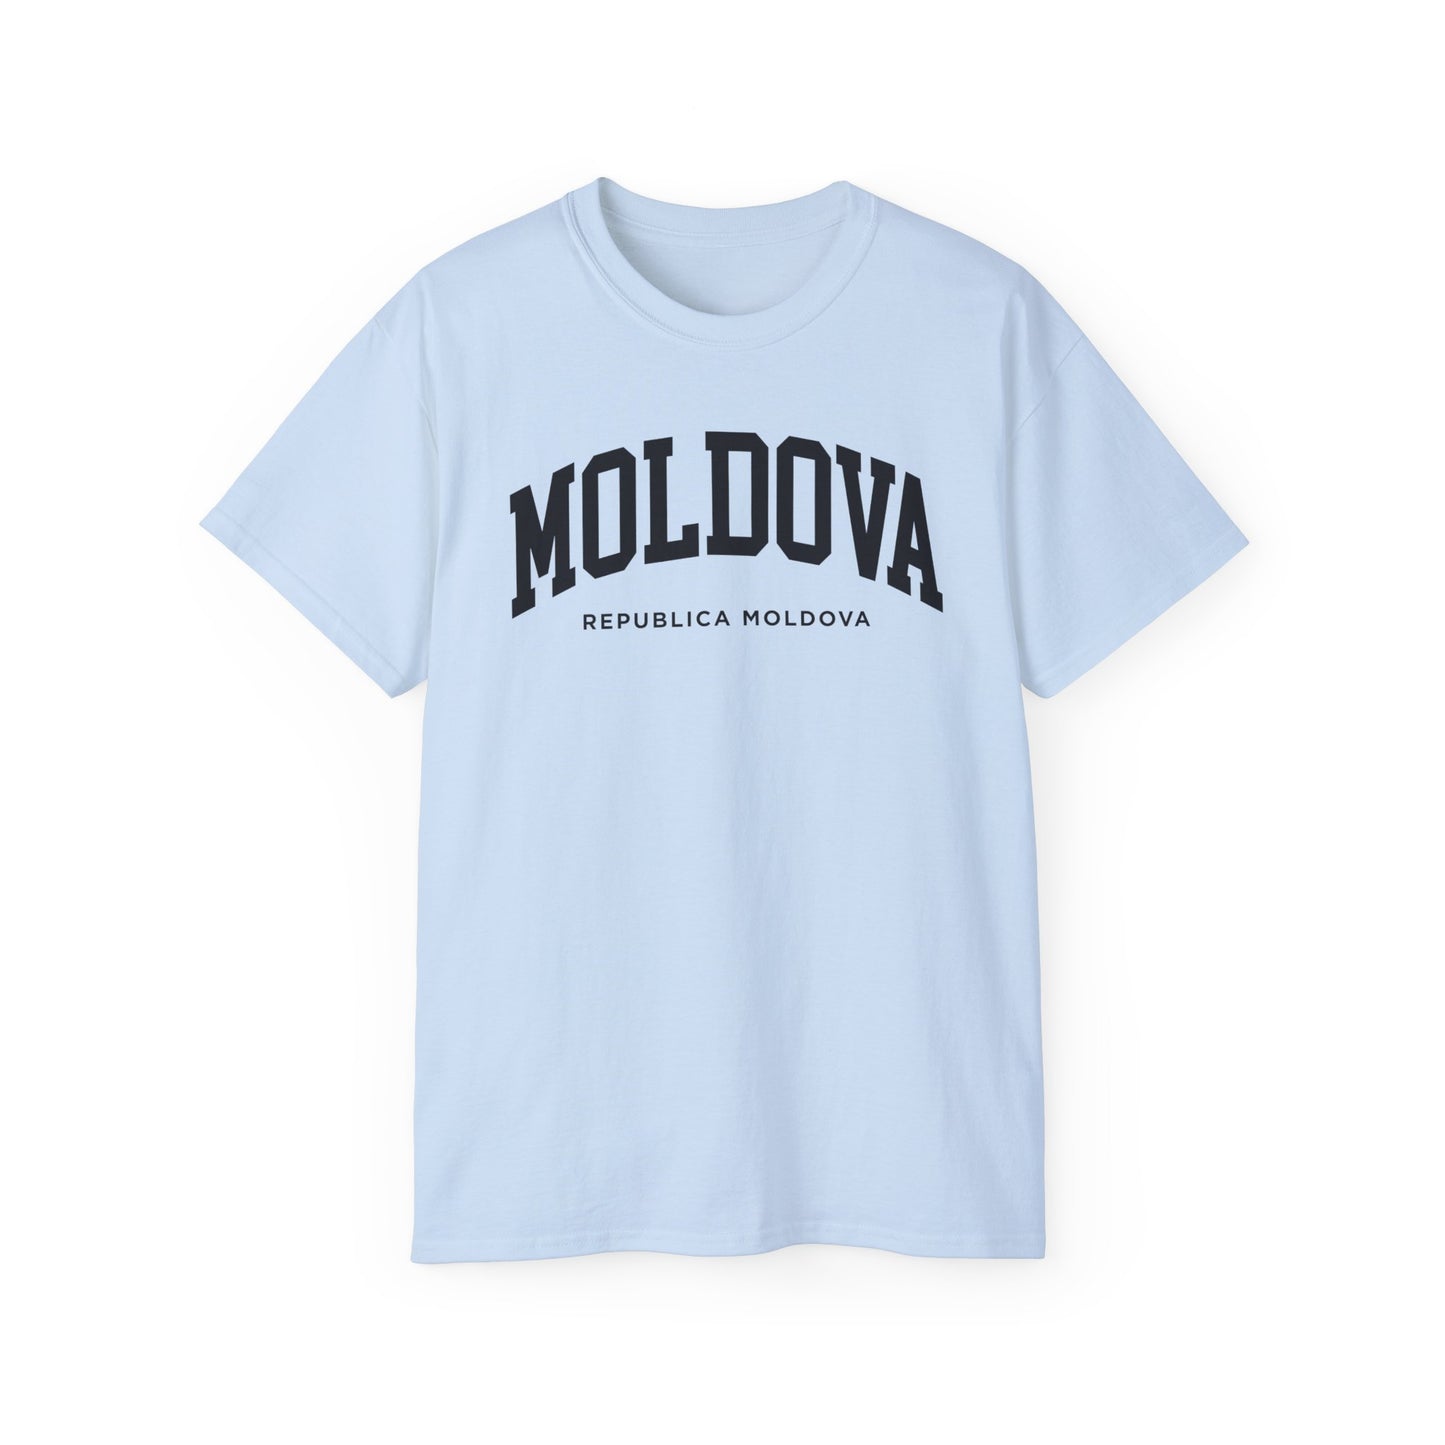 Moldova Tee